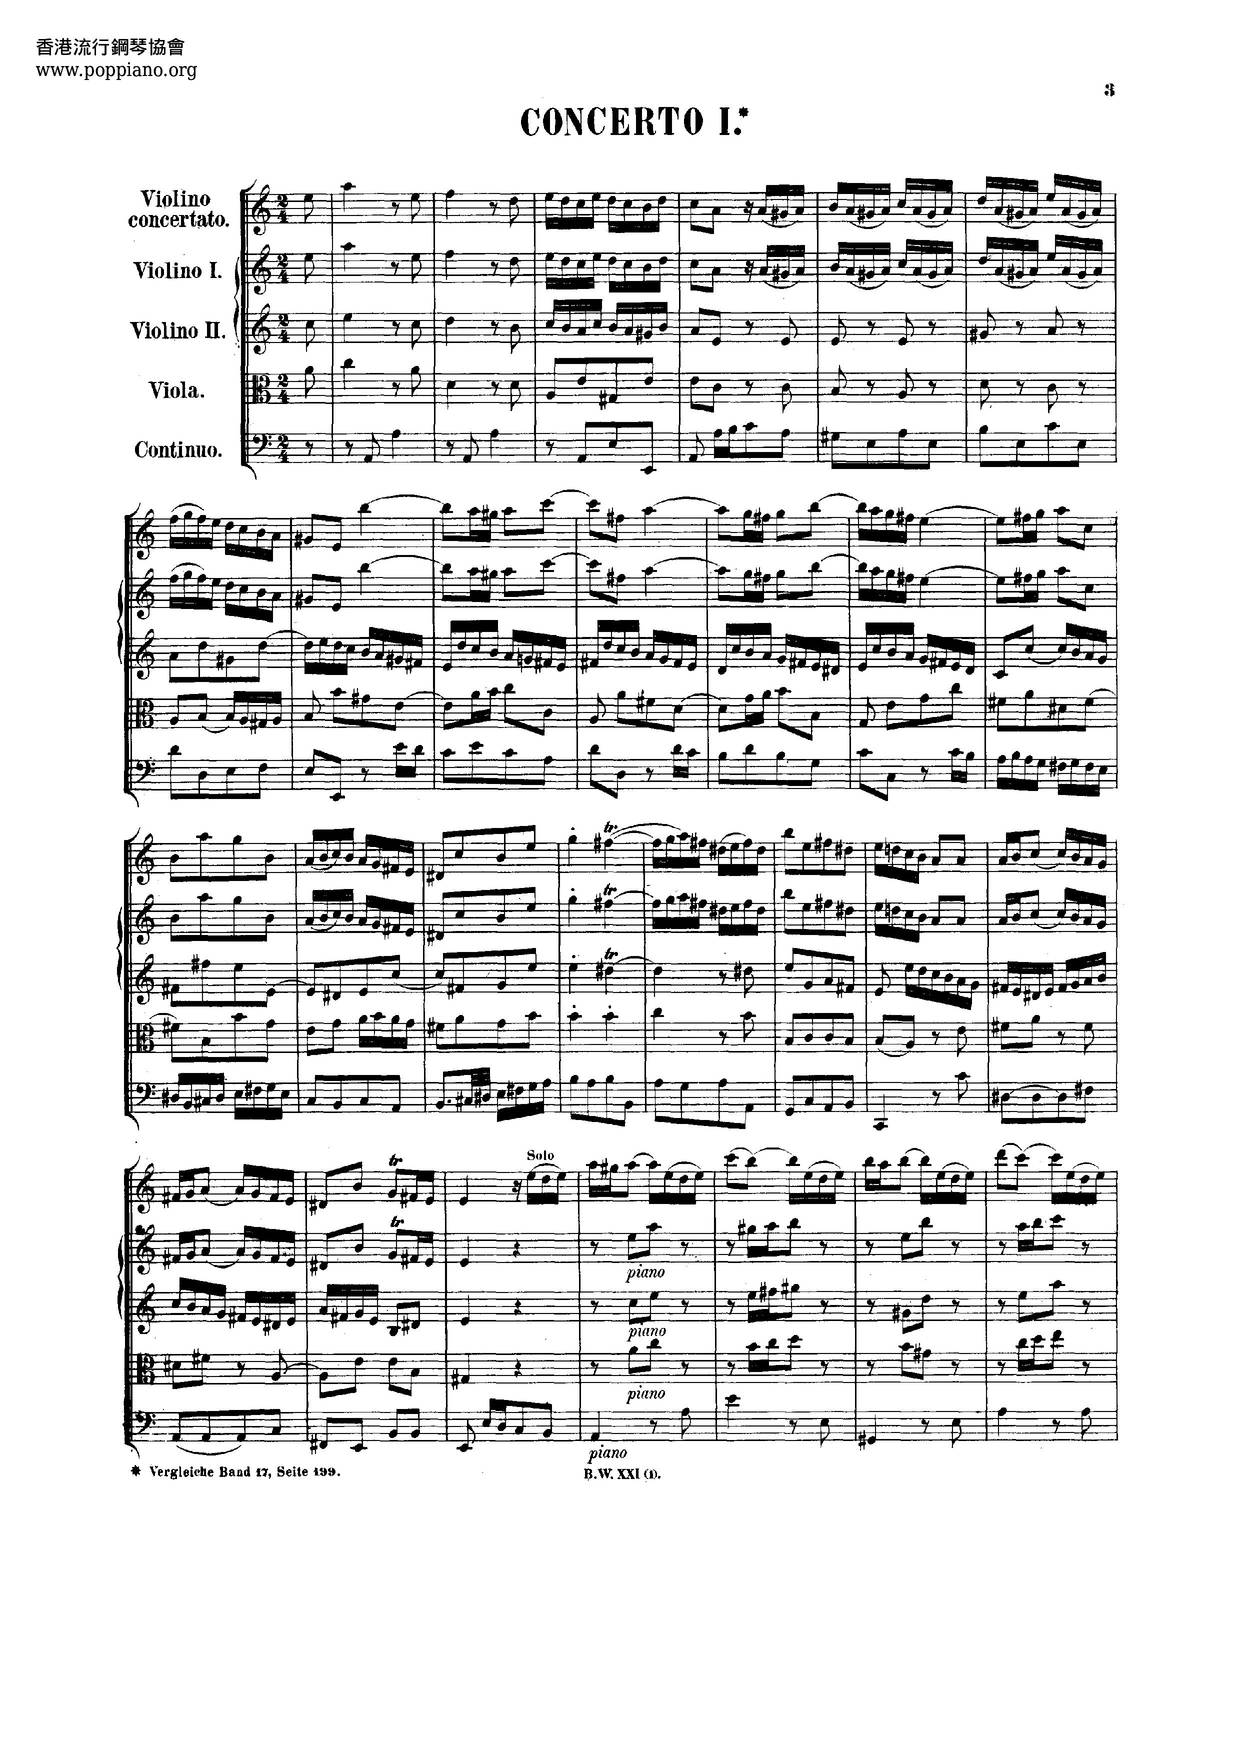 Violin Concerto No. 1 in A minor, BWV 1041: I. (Allegro moderato) Score